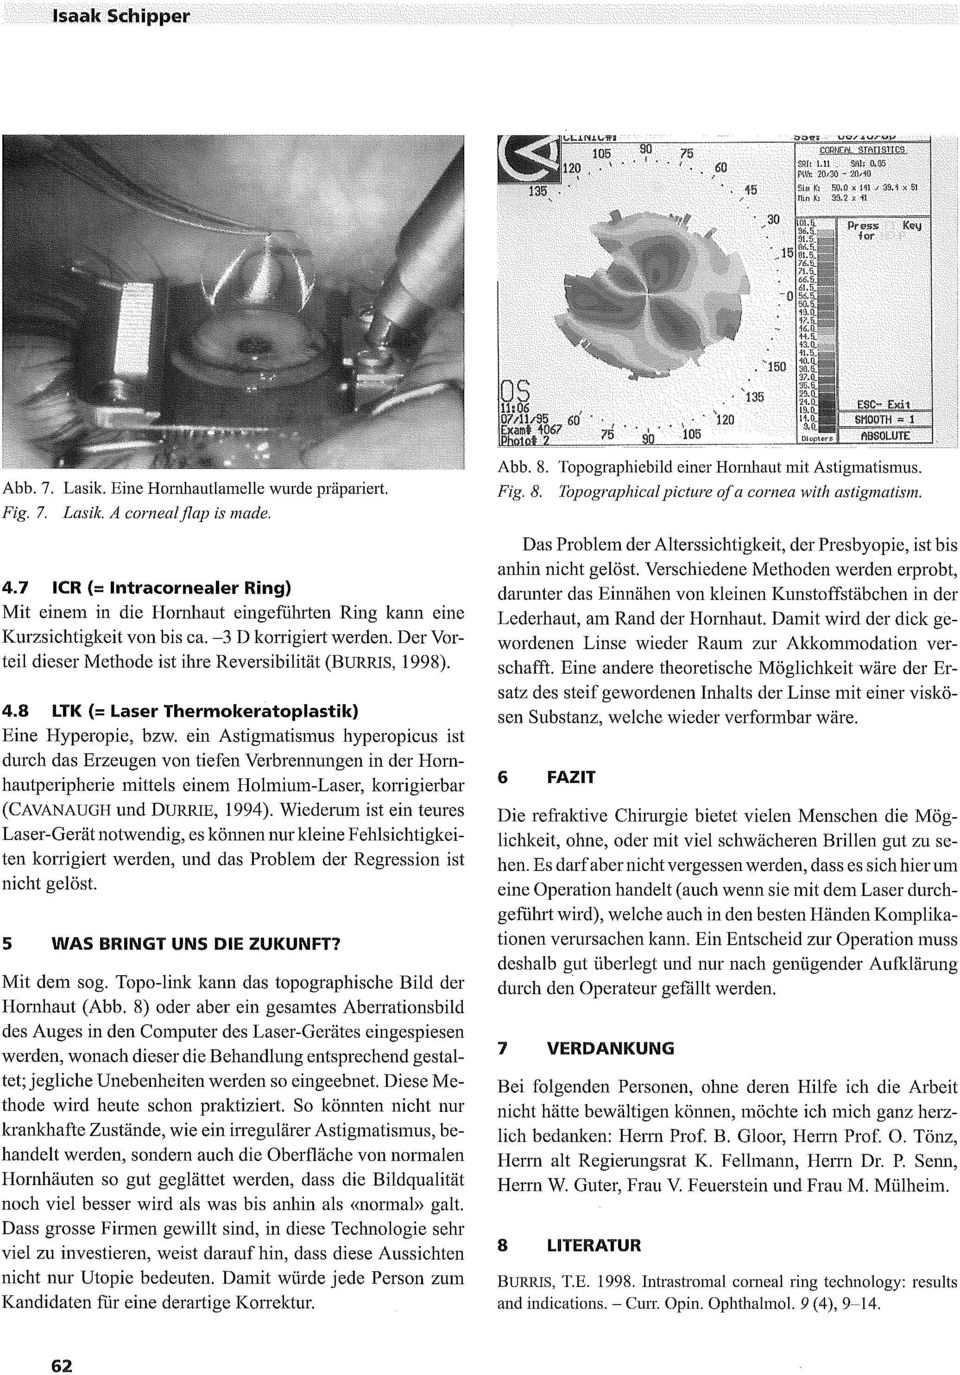 4.7 ICR (= Intracornealer Ring) Mit einem in die Hornhaut eingeführteh RiHg kahn eine Kurzsichtigkeit von bis ca. 3 D korrigiert Der Vorteil dieser Methode ist ihre Reversibilität (BURRIS, 1998). 4.